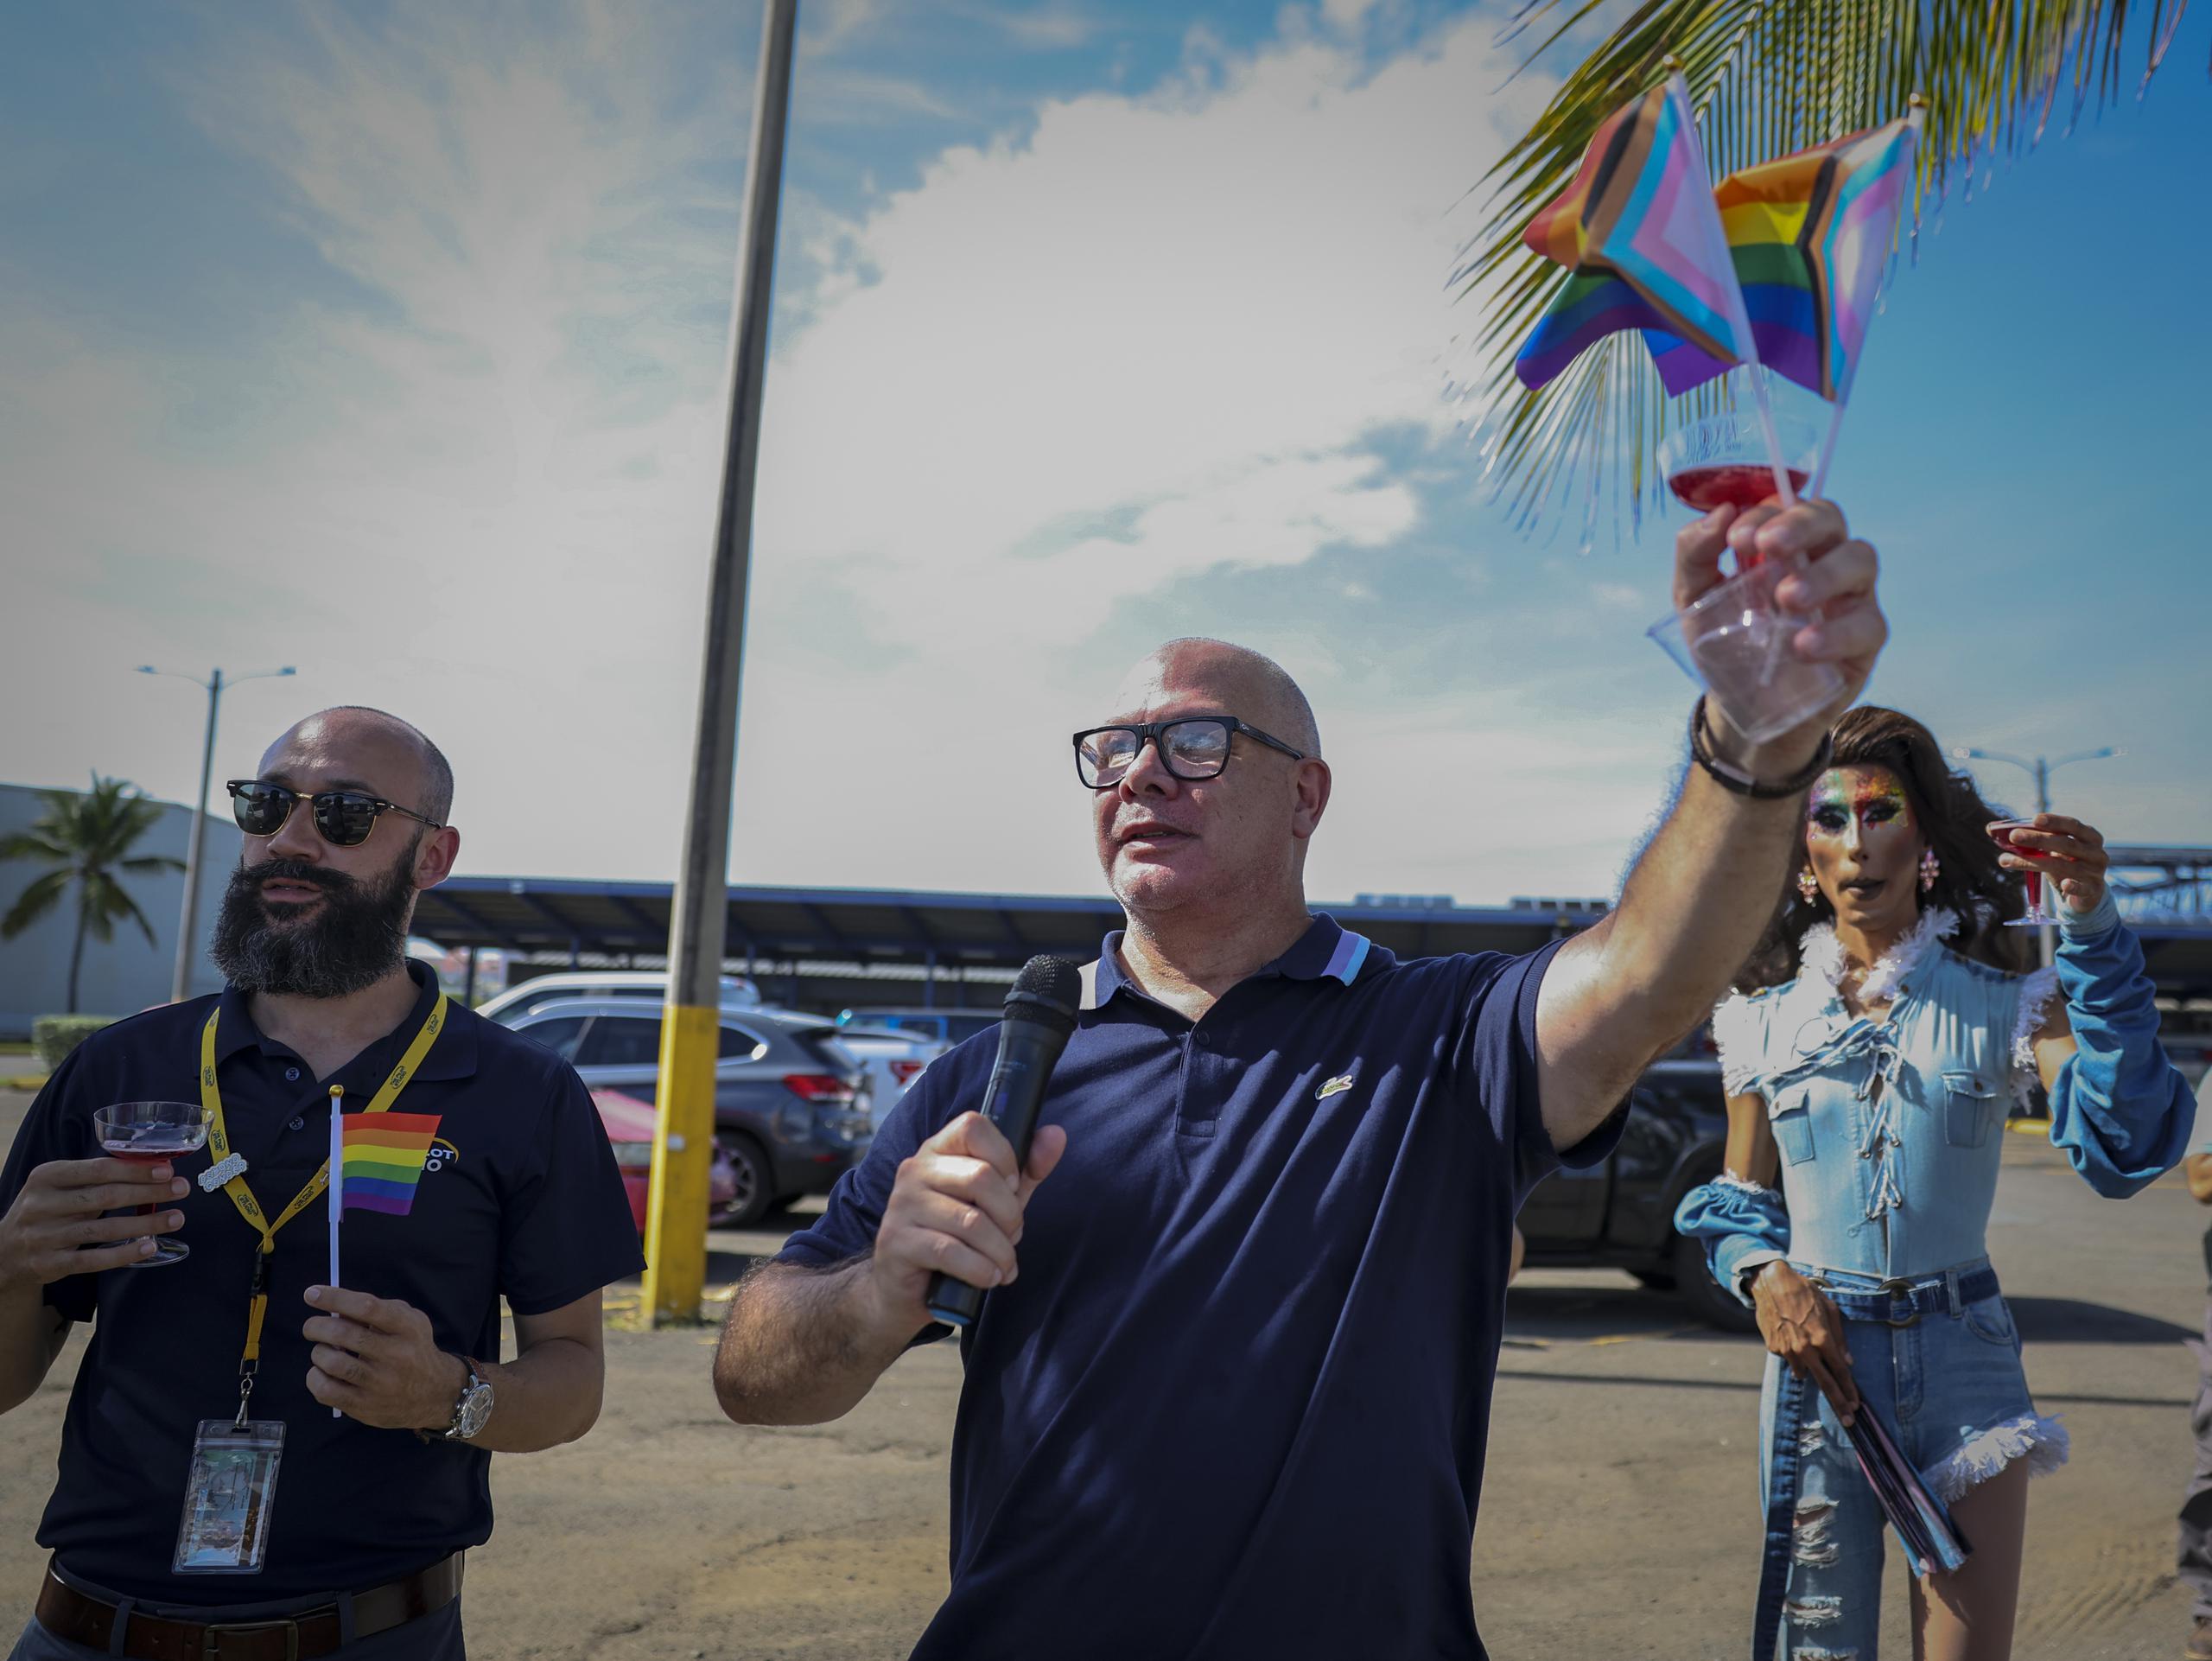 1 de Junio del 2023 Isla Grande Como parte del inicio del Mes de Orgullo, habrá un evento dirigido a fomentar la visibilidad, la diversidad y equidad en el campo de la aviación en Puerto Rico. Será la primera vez que una escuela realiza un evento público en un aeropuerto importante en PR de esta magnitud. Se estarán izando las banderas de orgullo para dar inicio al mes de Orgullo foto Joey Colon presidente de la Camara de Comercio LGBT
david.villafane@gfrmedia.com